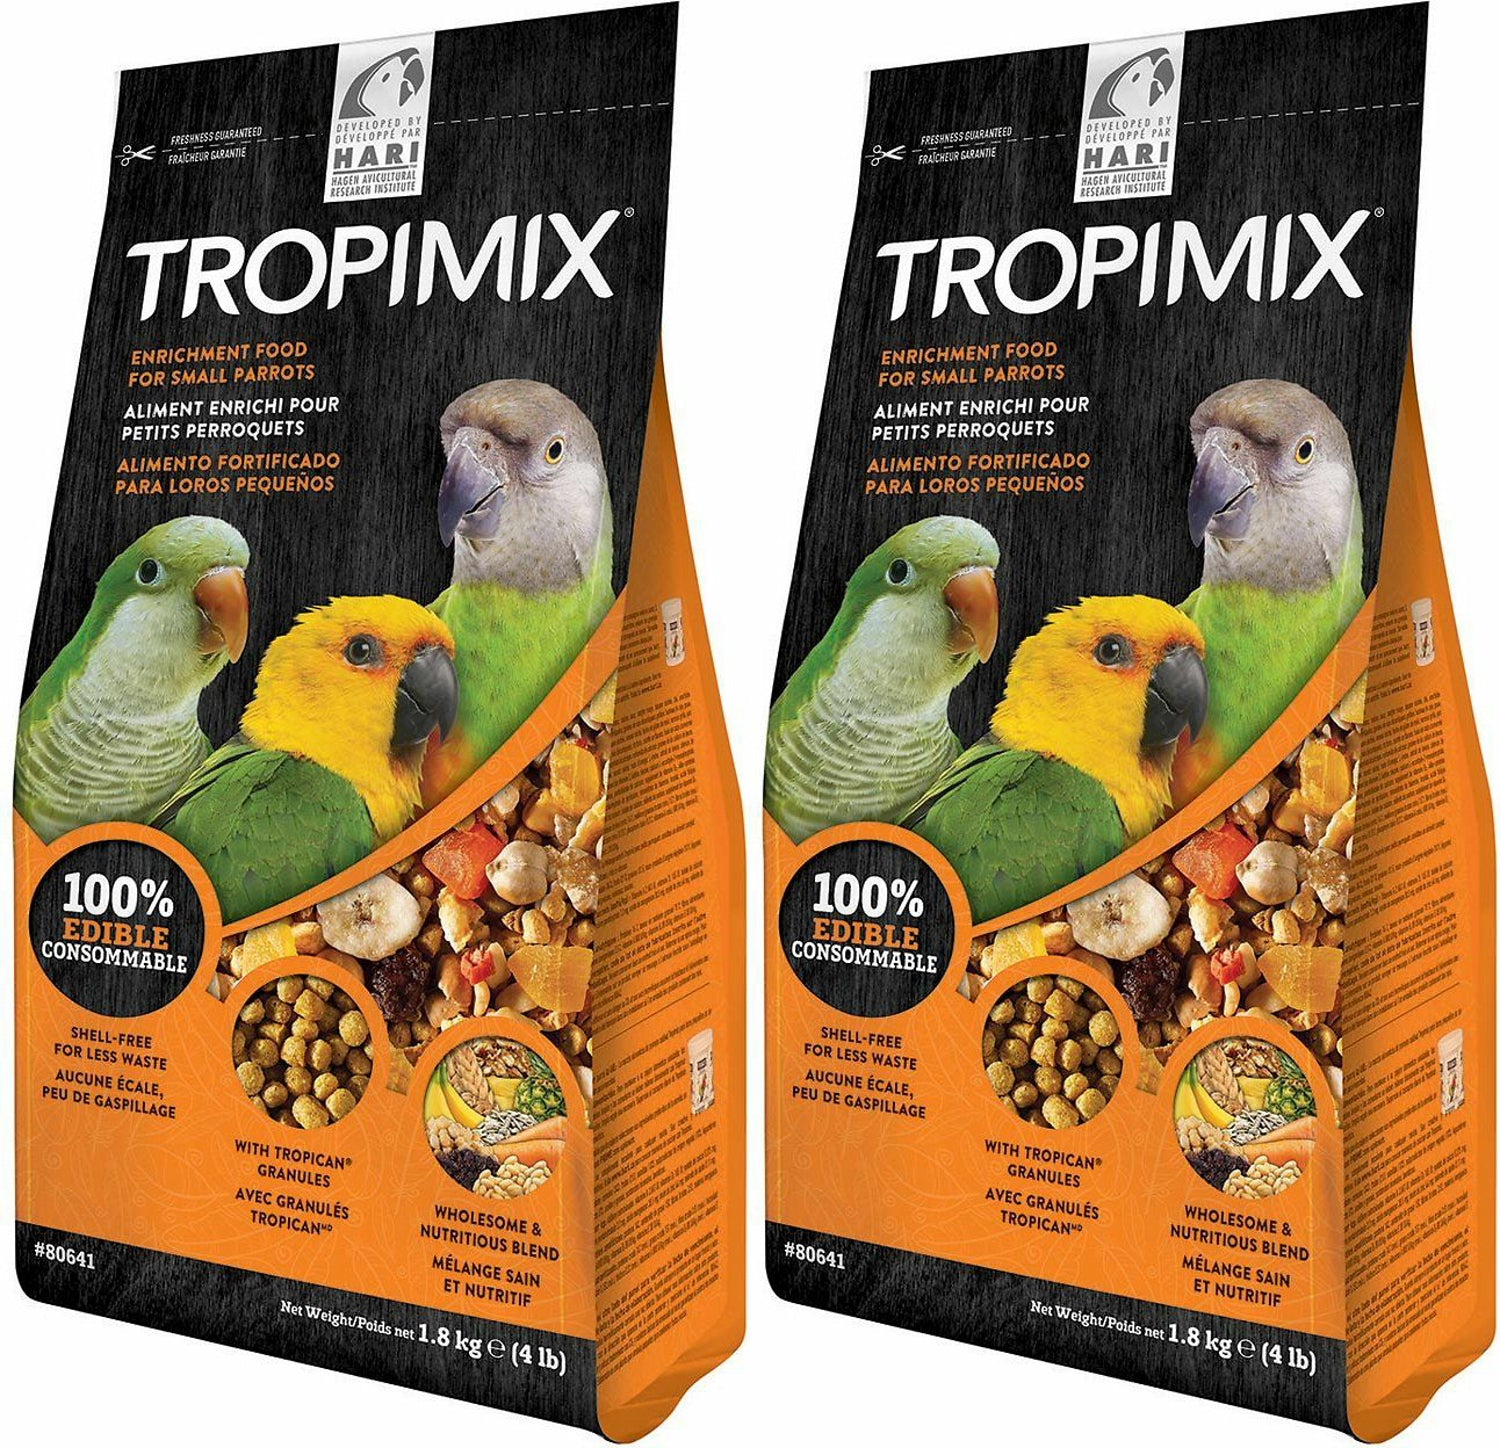 Tropimix Enrichment Food for Small Parrots, 4 Pound, 2 Pack